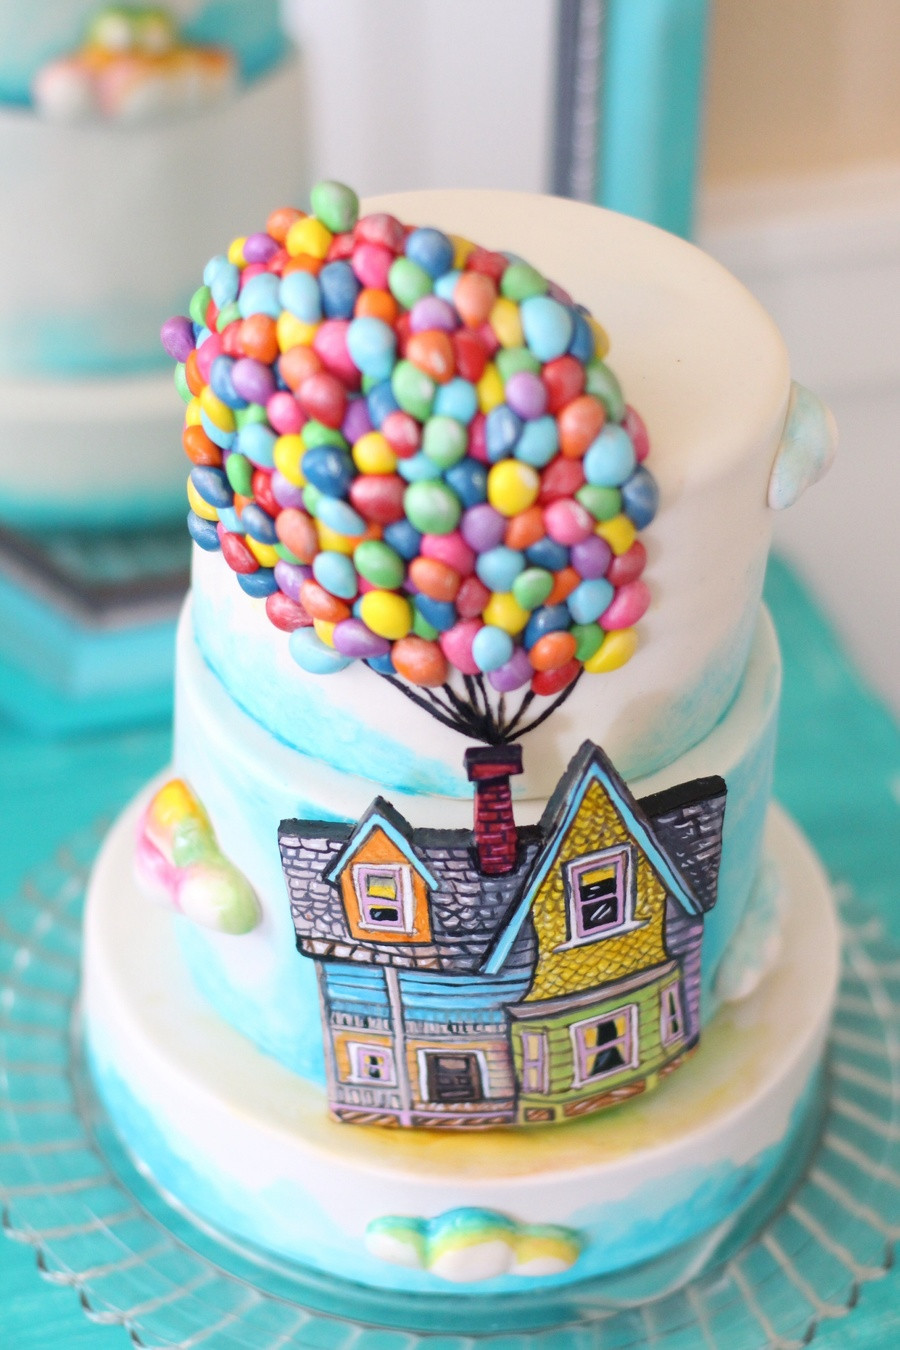 Themed Birthday Cakes
 Up Themed Cake A Billion Tiny Hand Made Fondant Balloons